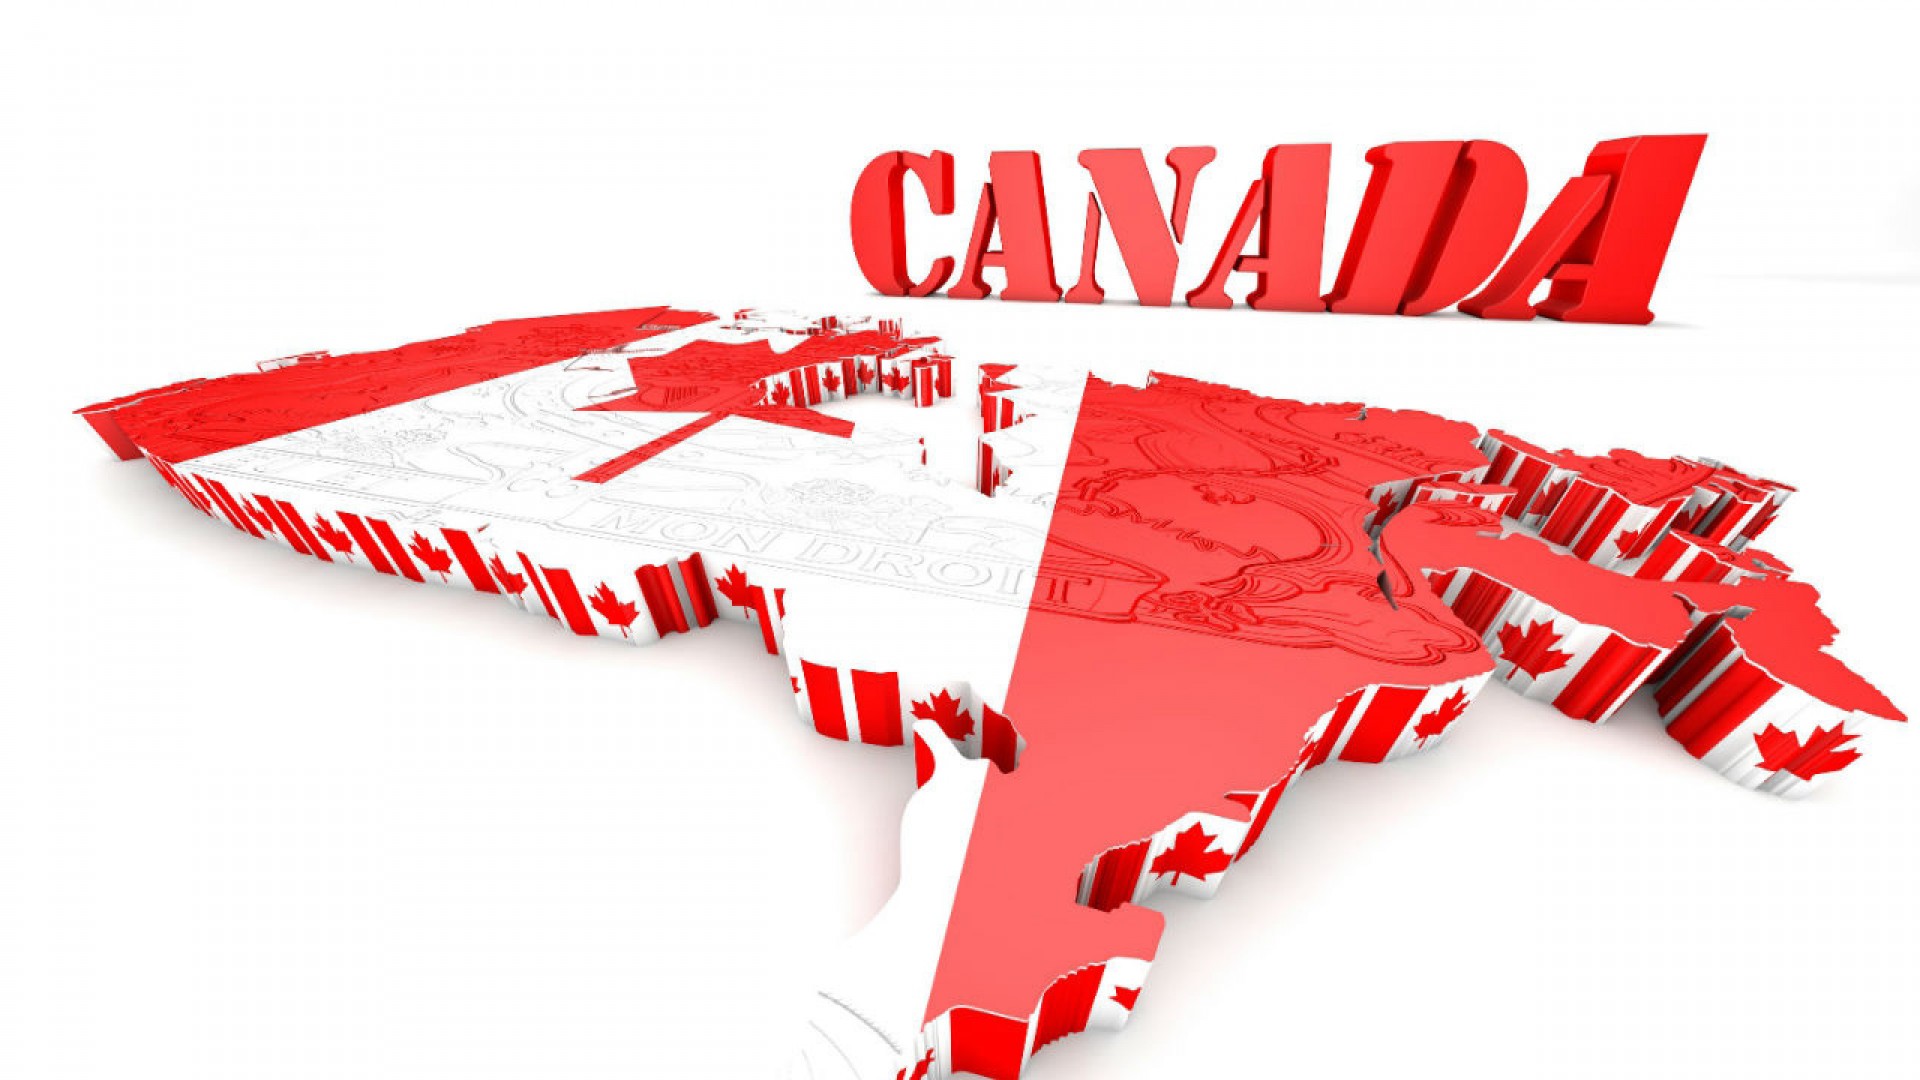 Chính sách Study Direct Stream – Cánh cửa du học Canada không cần chứng minh tài chính